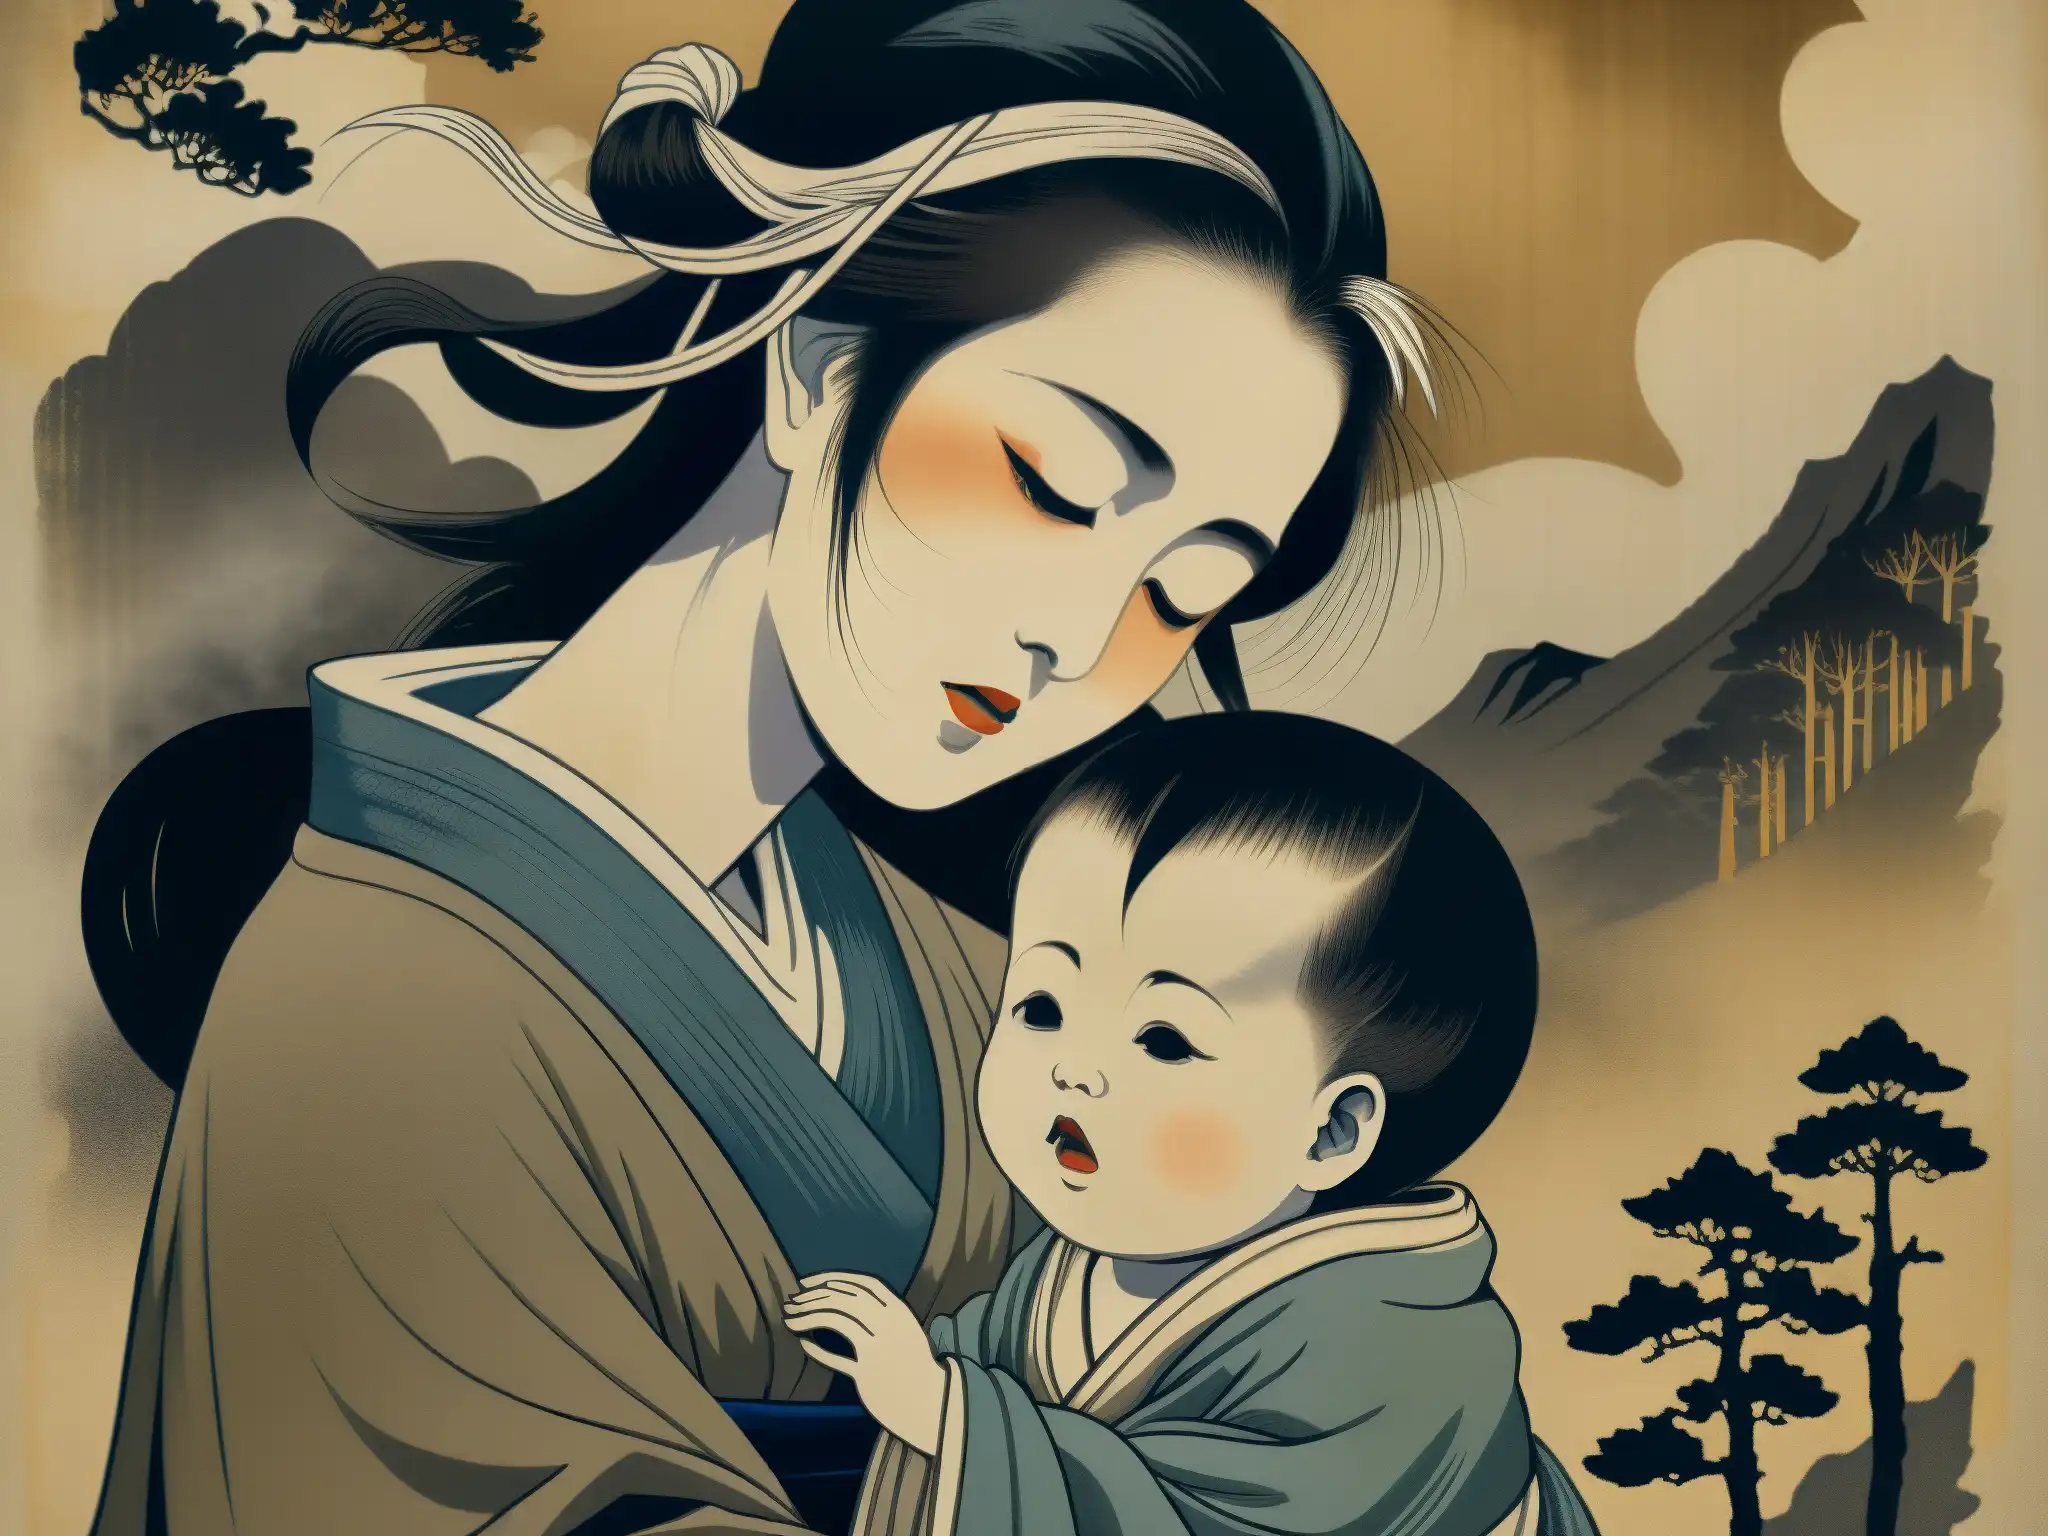 Detalle de antiguo pergamino con Ubume, madres fantasmales del folklore japonés, en un bosque brumoso y misterioso